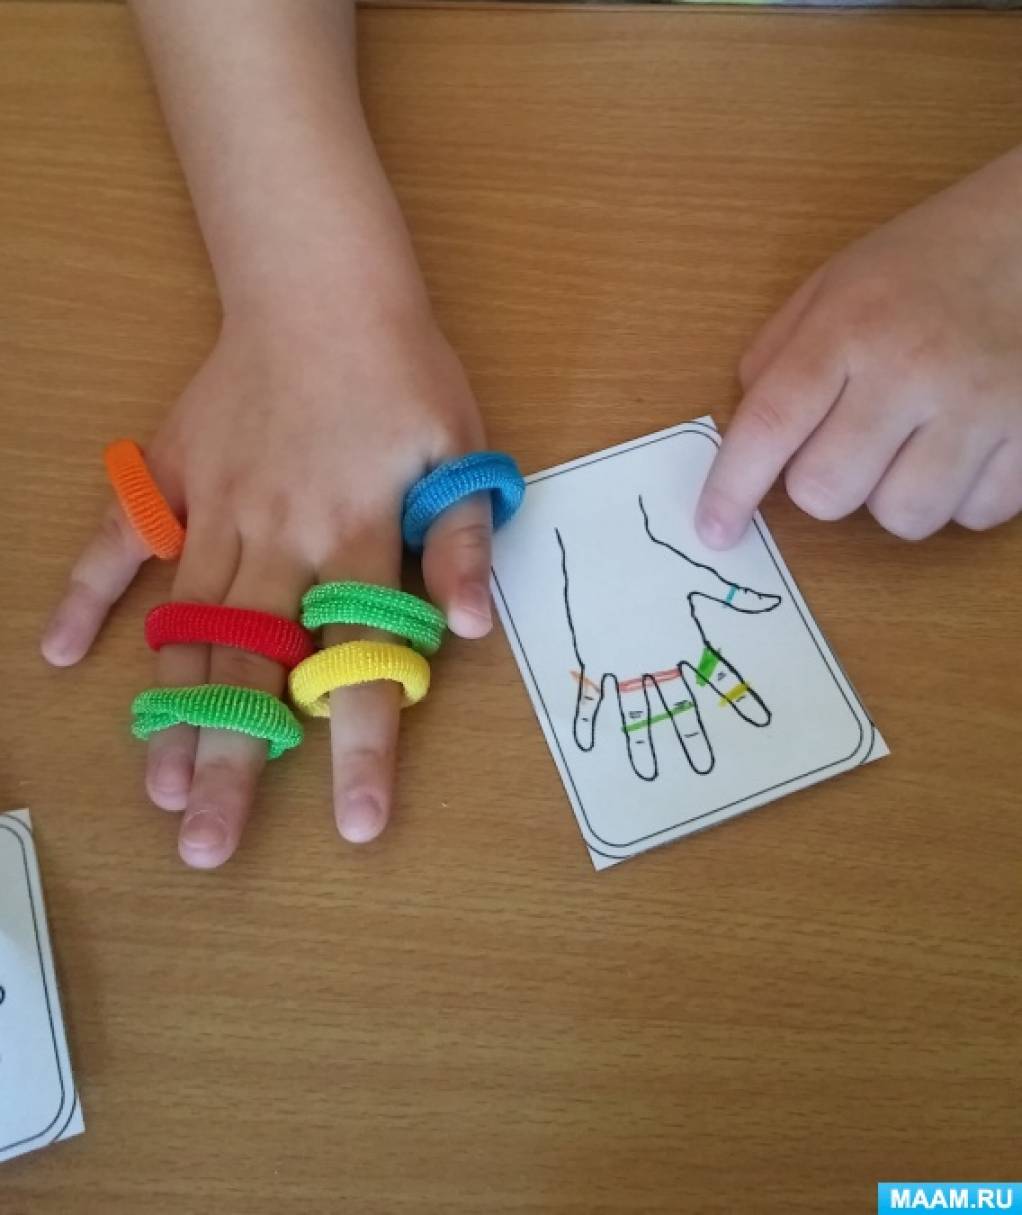 Ігри з резиночками   Використання нестандартного обладнання для розвитку тонких рухів пальців рук у дітей з вадами мовлення 5-6 років